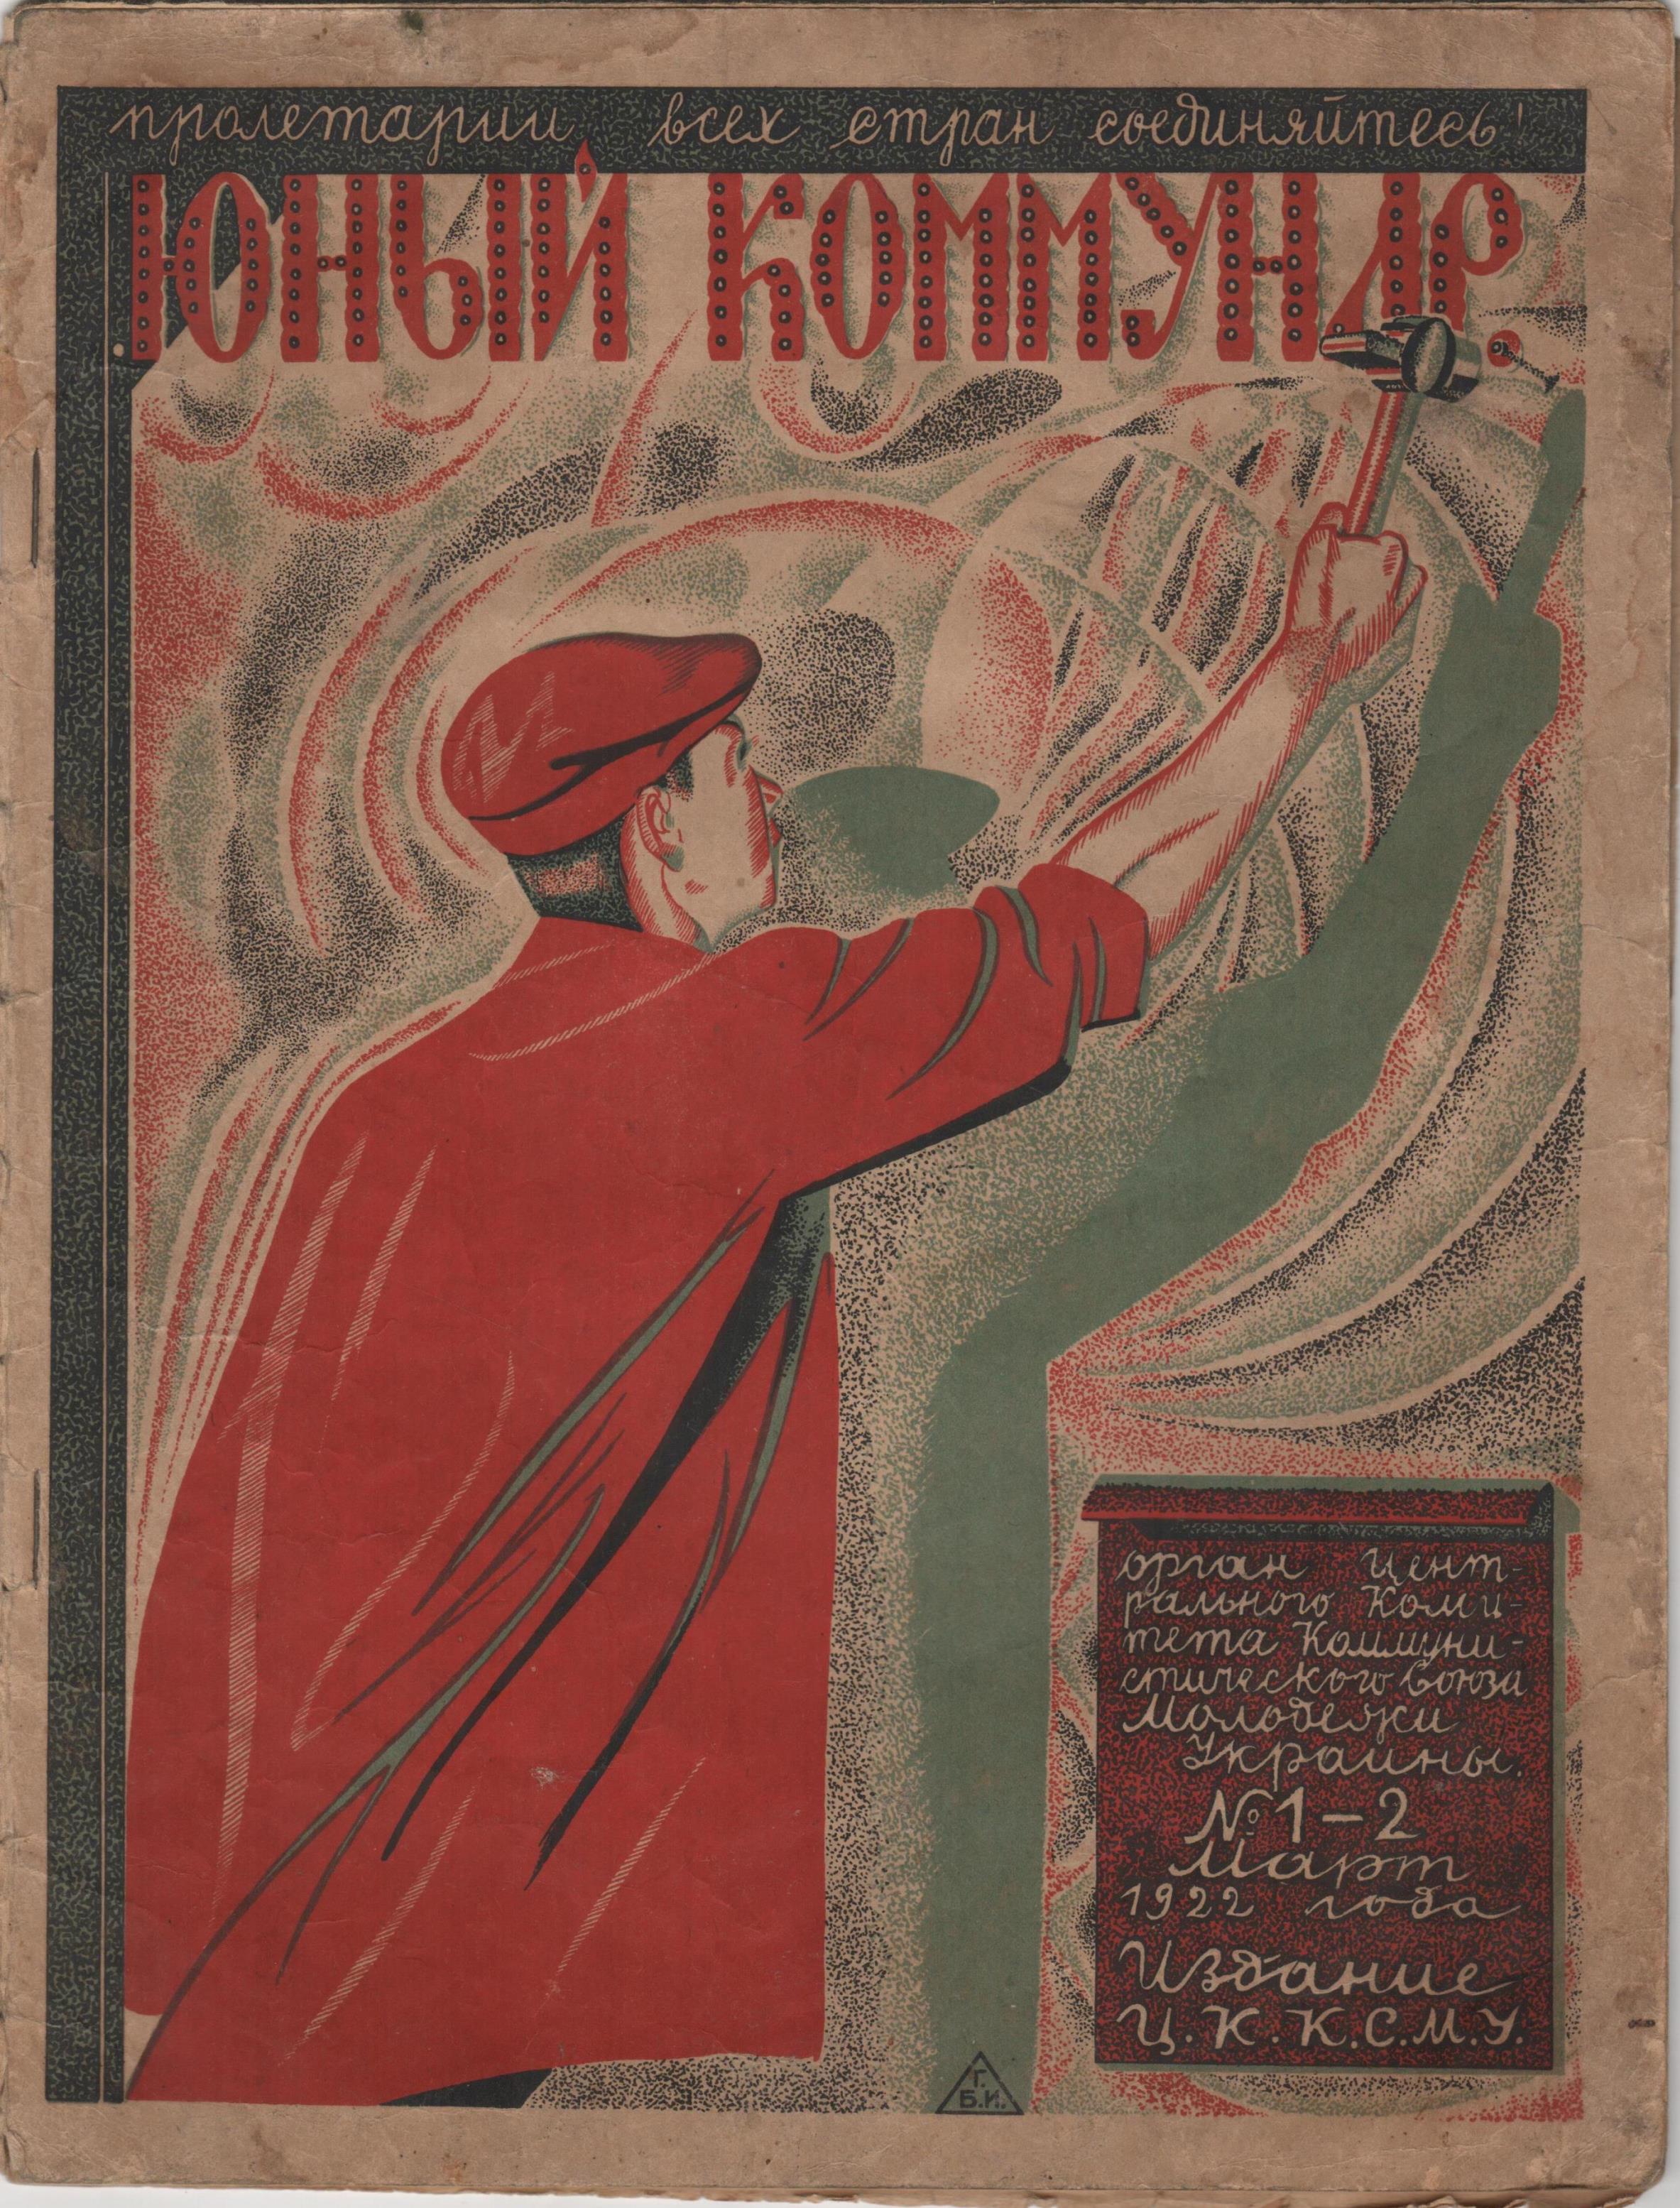 Журнал "Юный коммунар". 1922. № 1-2